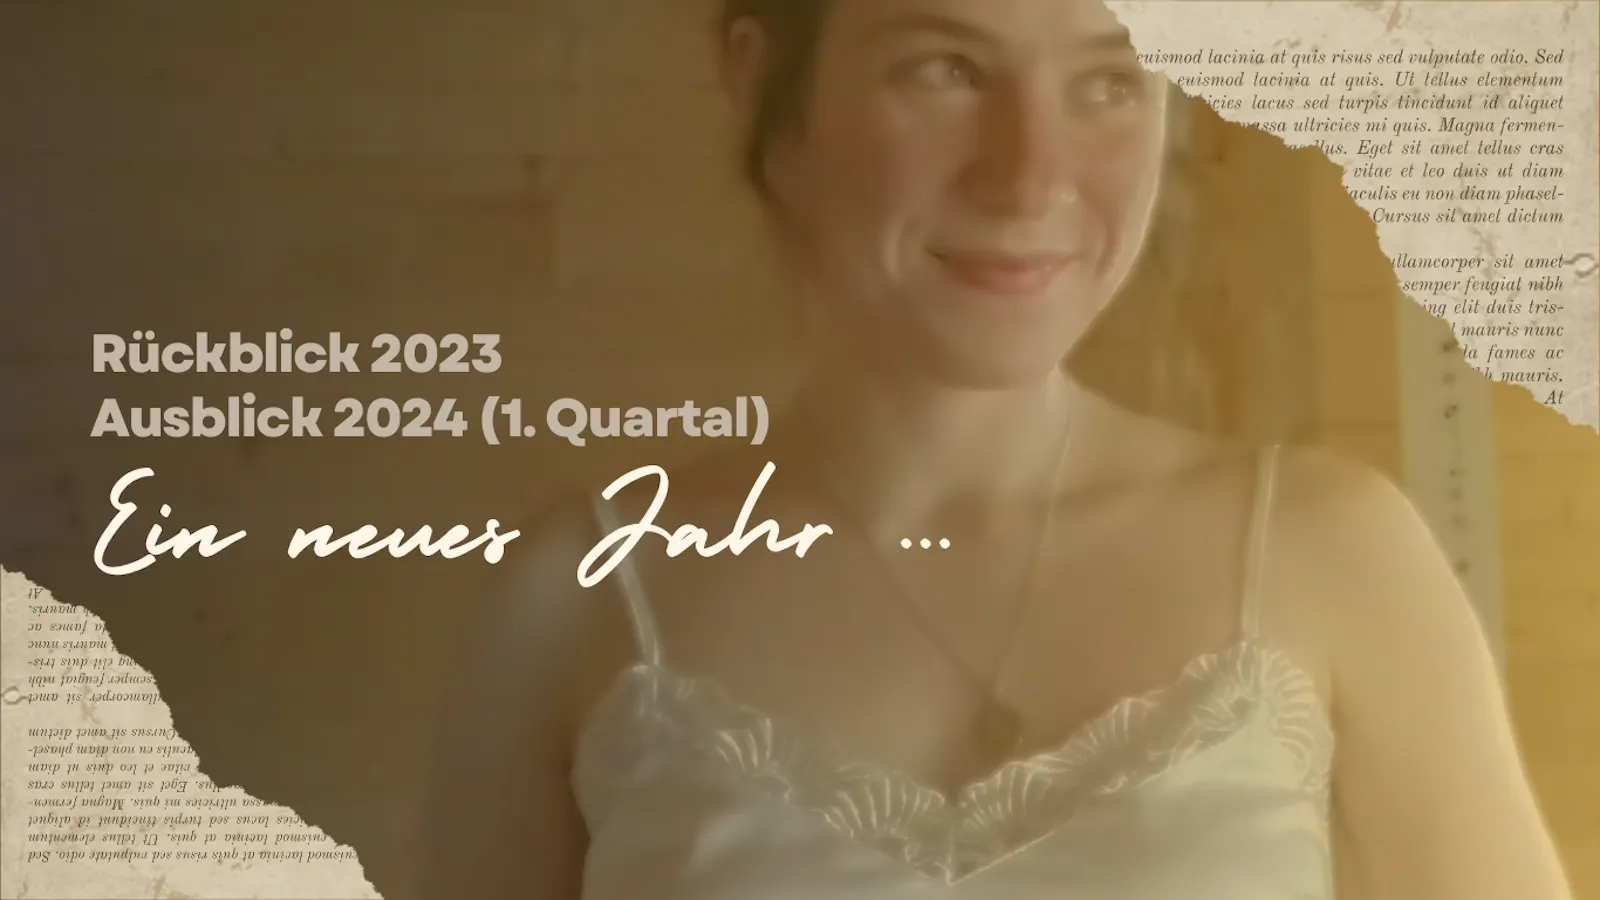 Das Titelbild zeigt ein Foto der Autorin. Daneben der Text: "Rückblick 2023. Ausblick 2024 (1. Quartal). Ein neues Jahr ...)